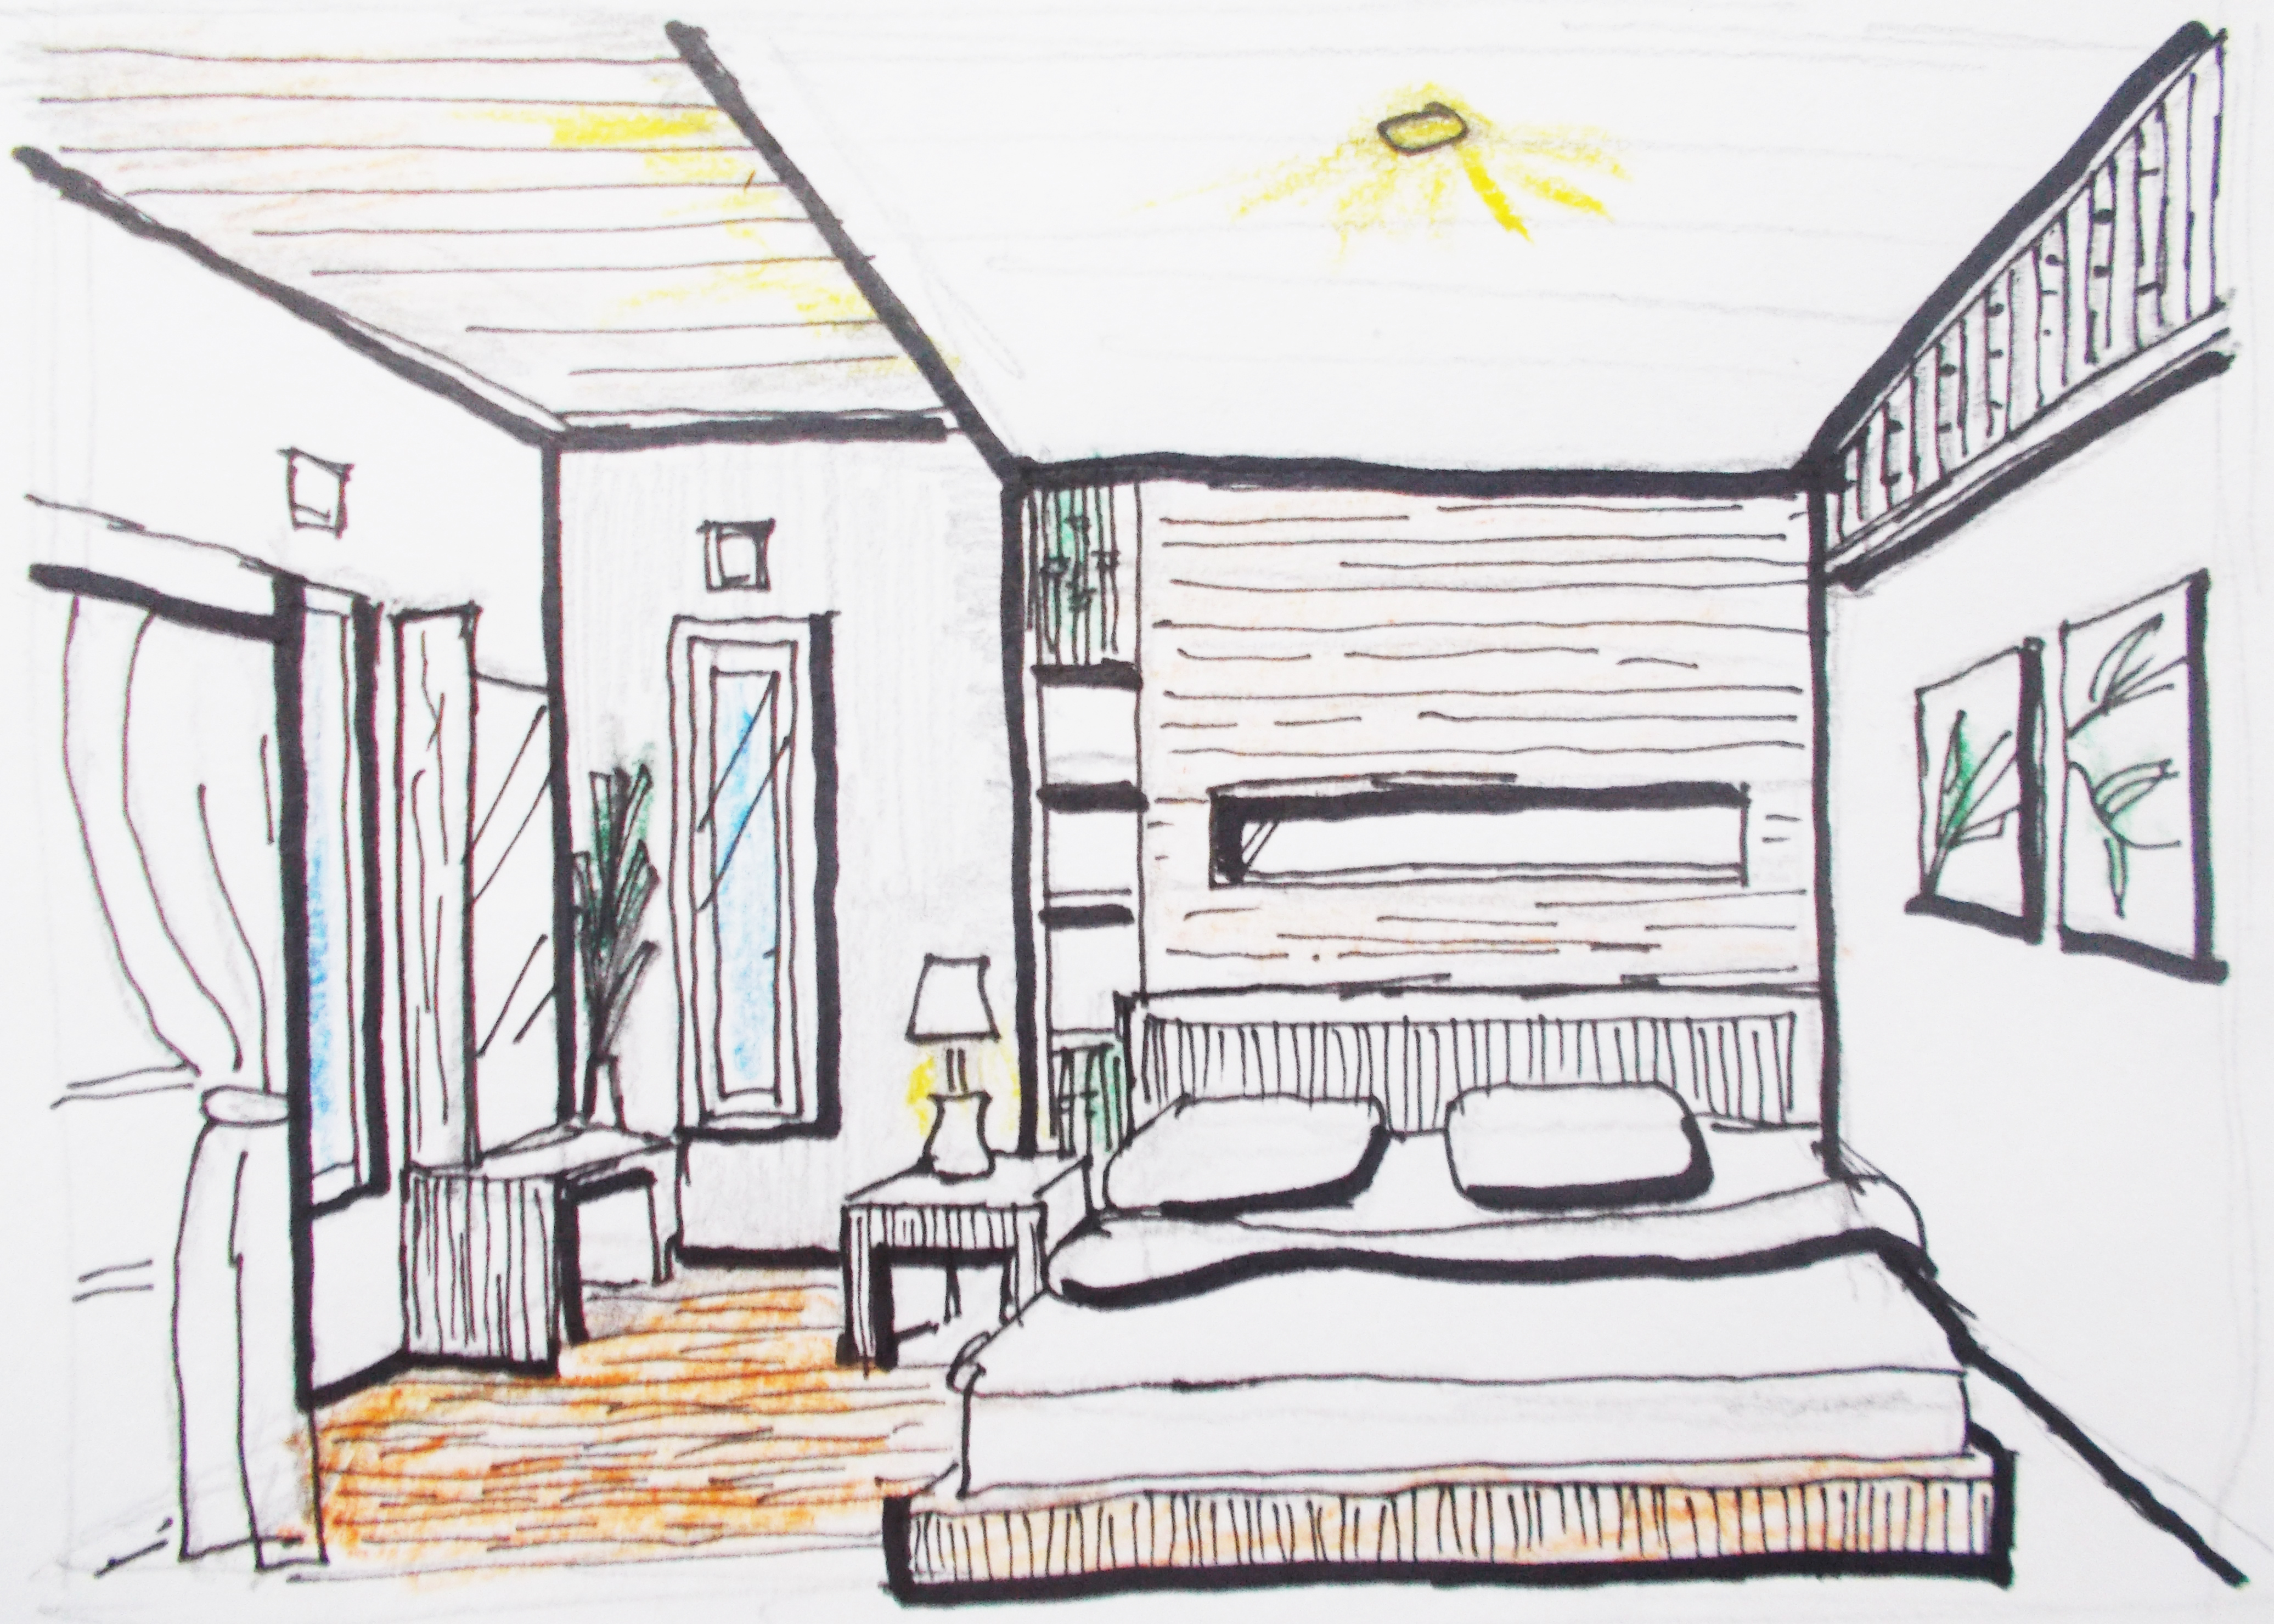 Gambar Kamar Tidur Perspektif Lana 39 S Blog Desain Interior Dan